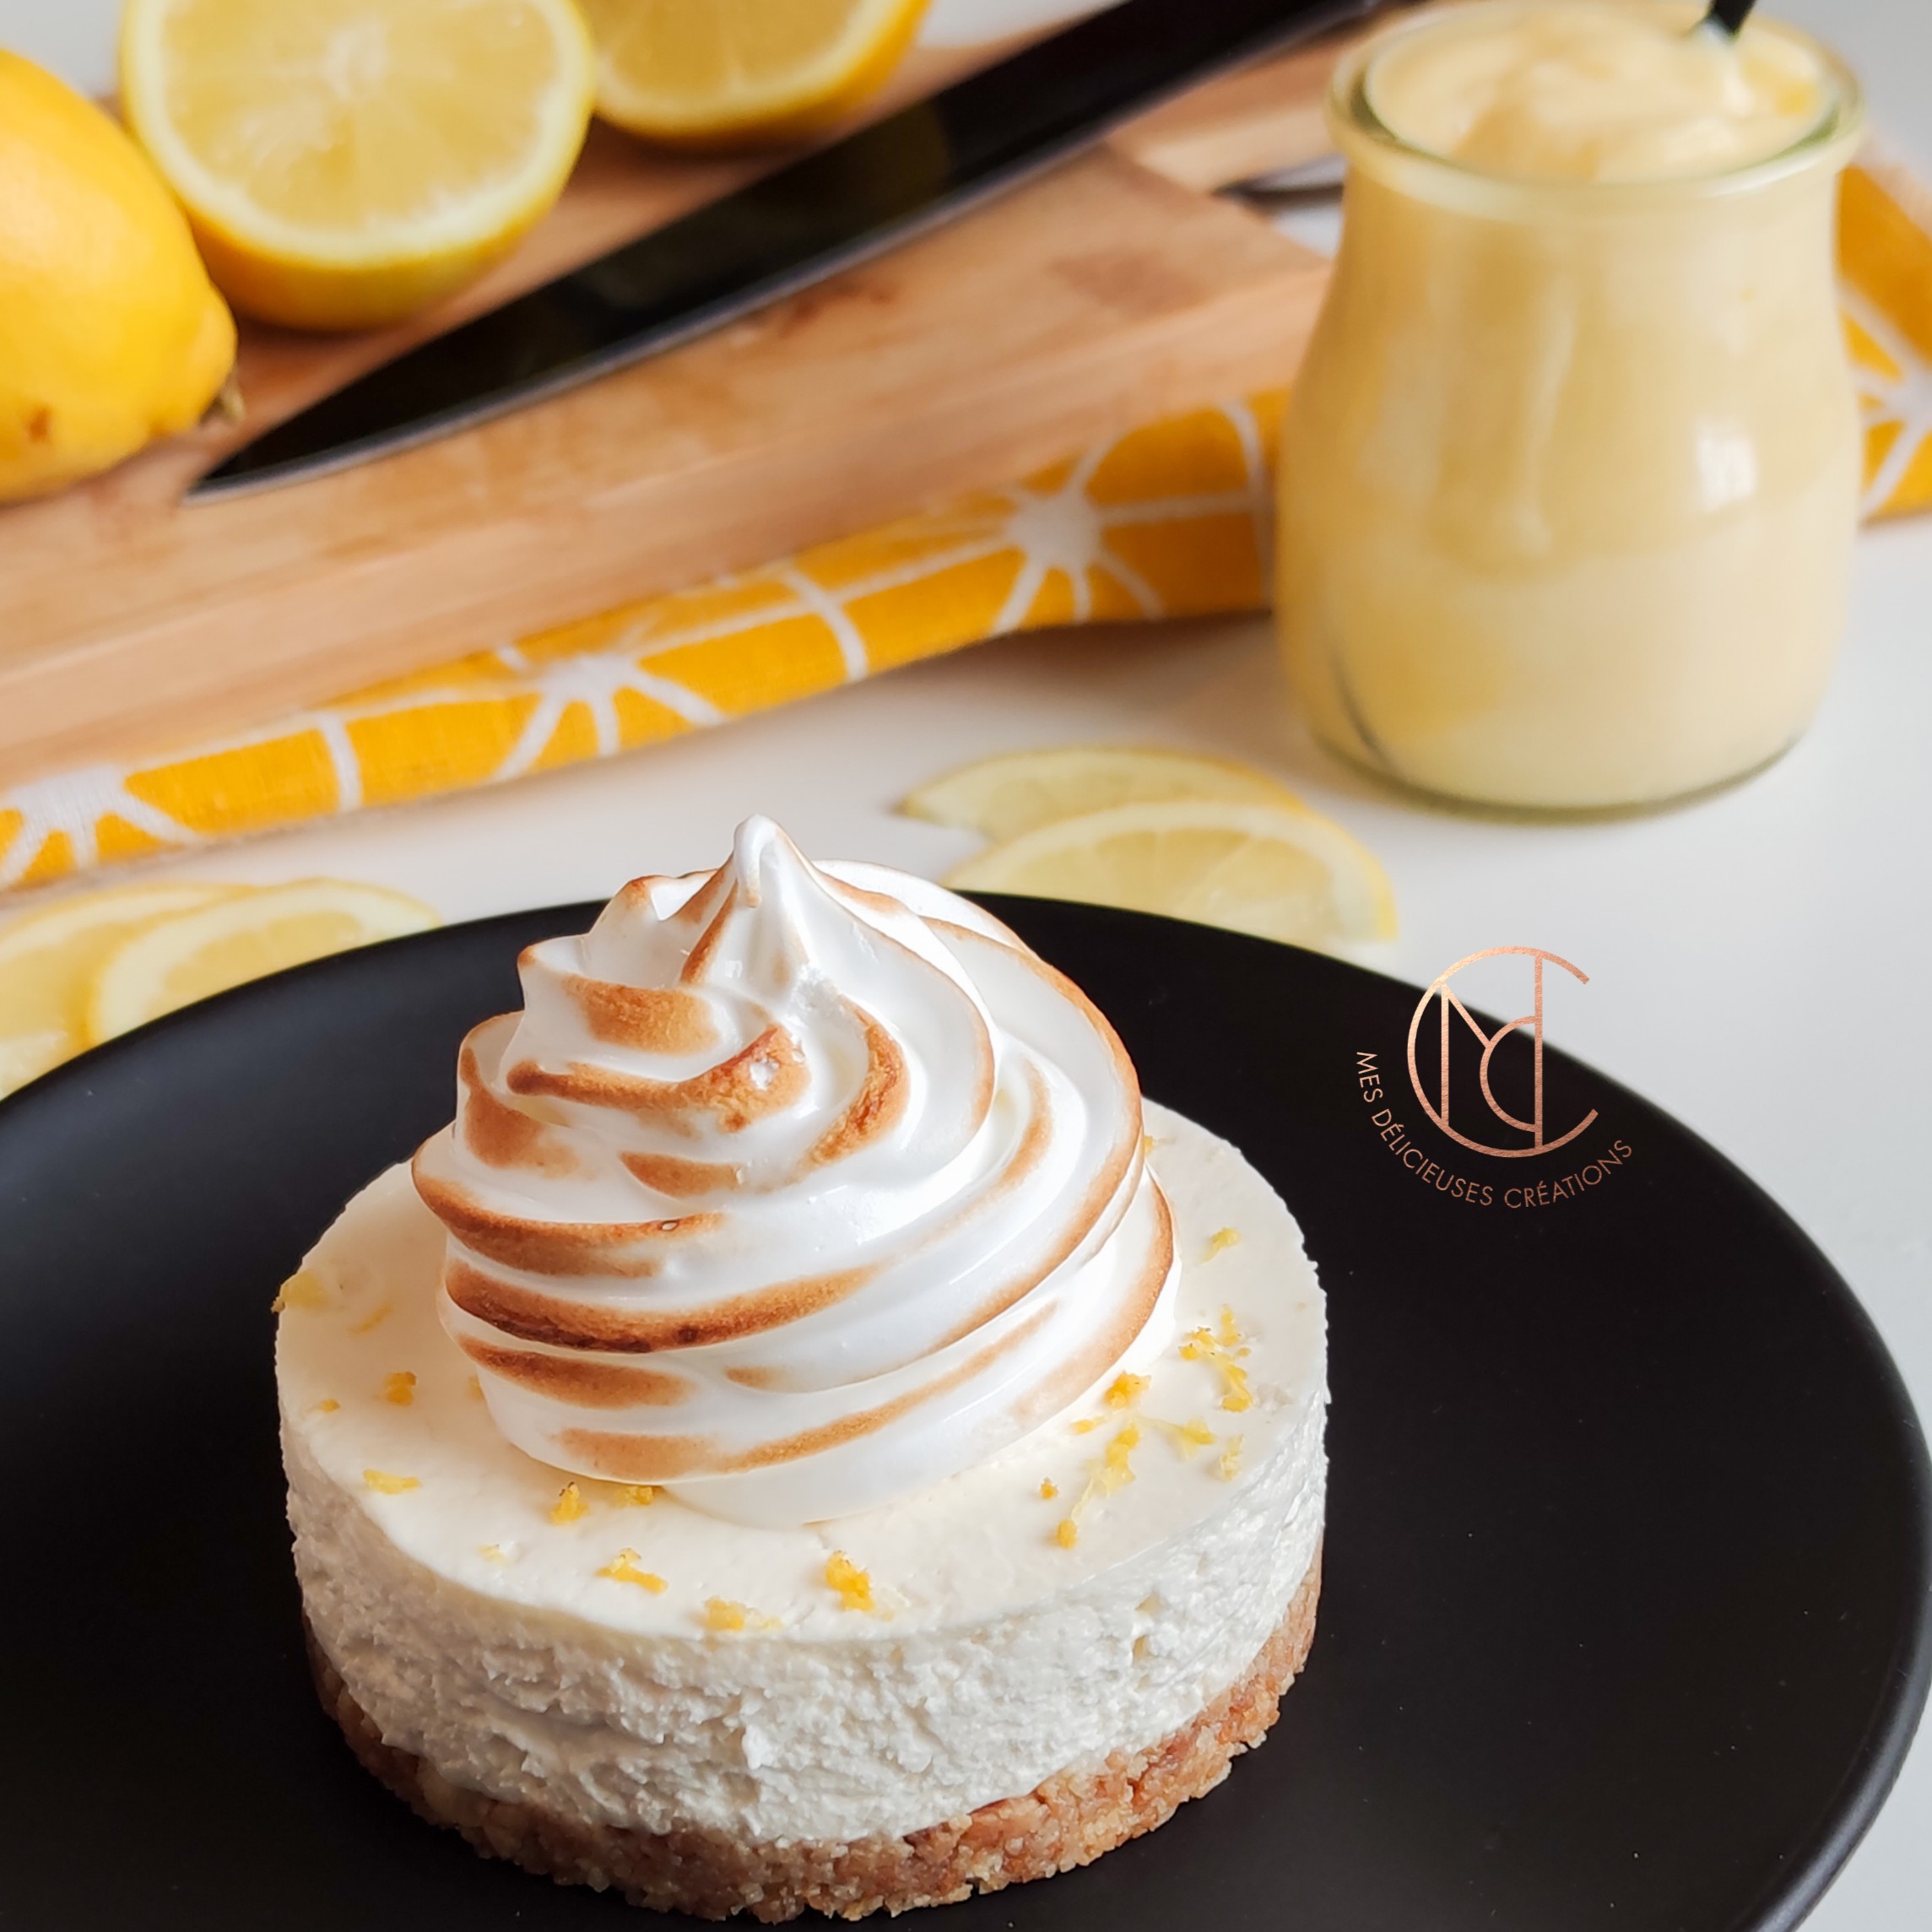 cheesecake citron meringué